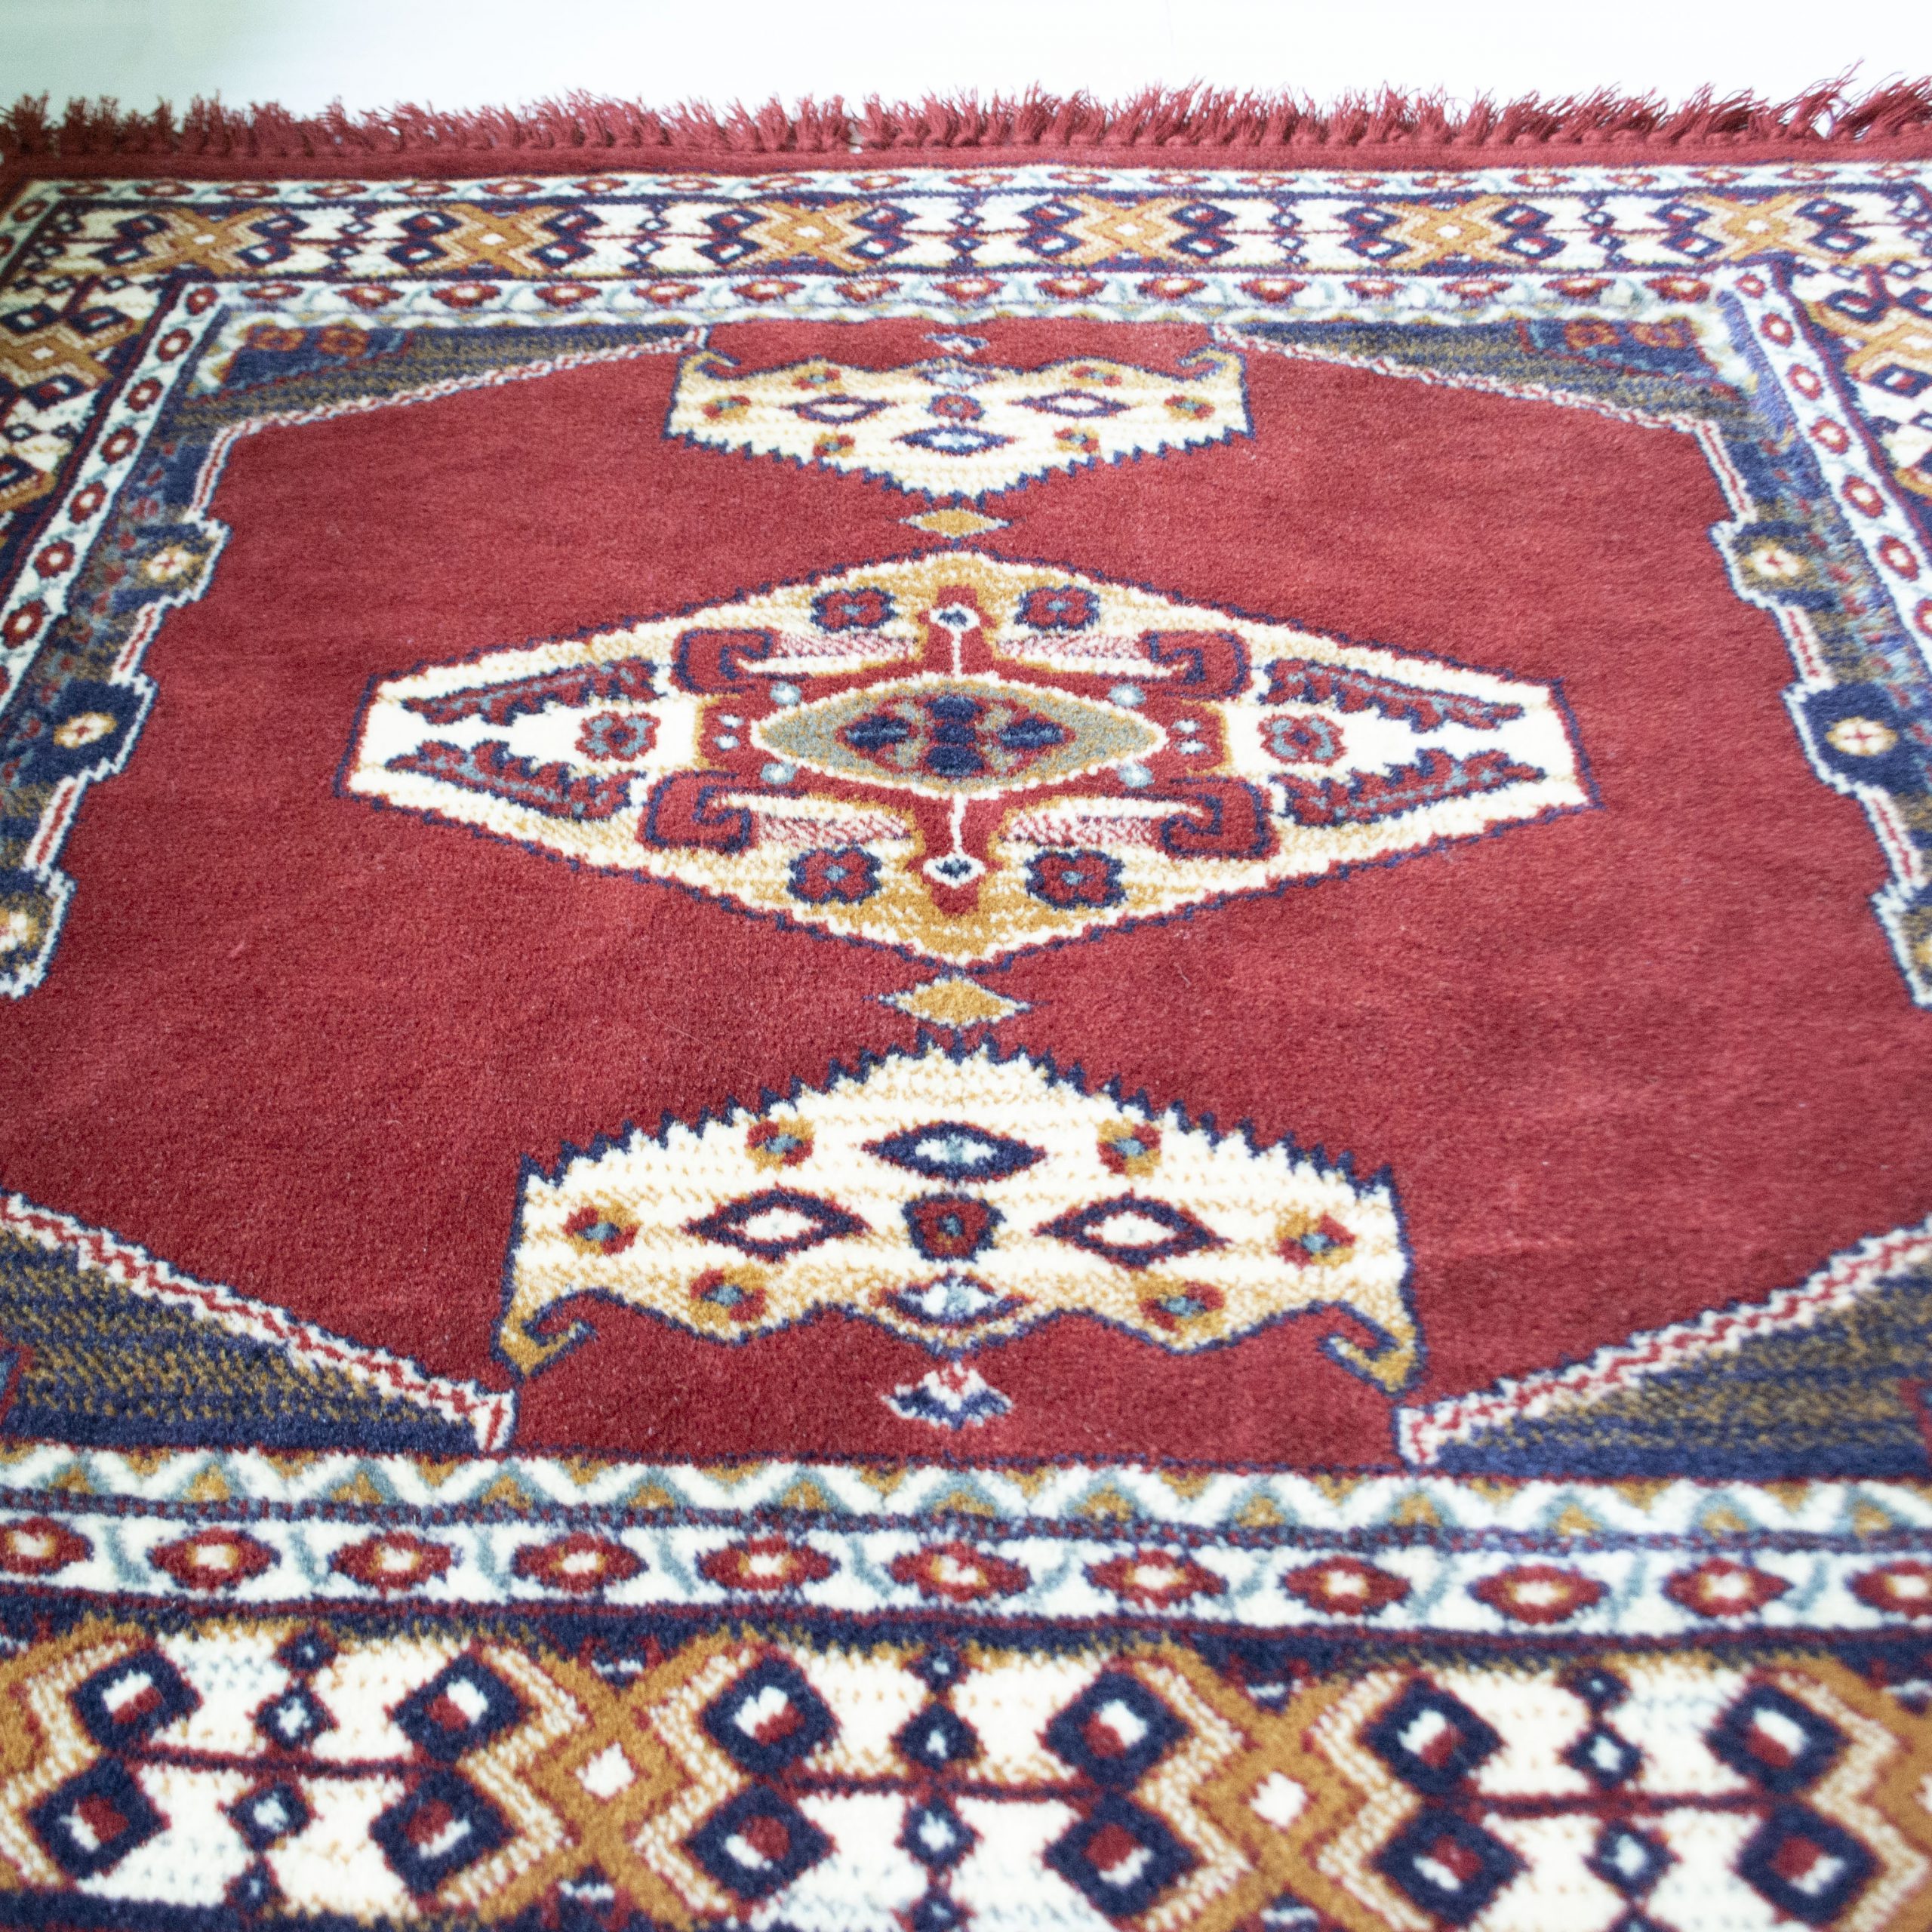 Skim Meetbaar Kapel Vintage tapijt/vloerkleed rood - End of April - Vintage tapijt/vloerkleed  rood